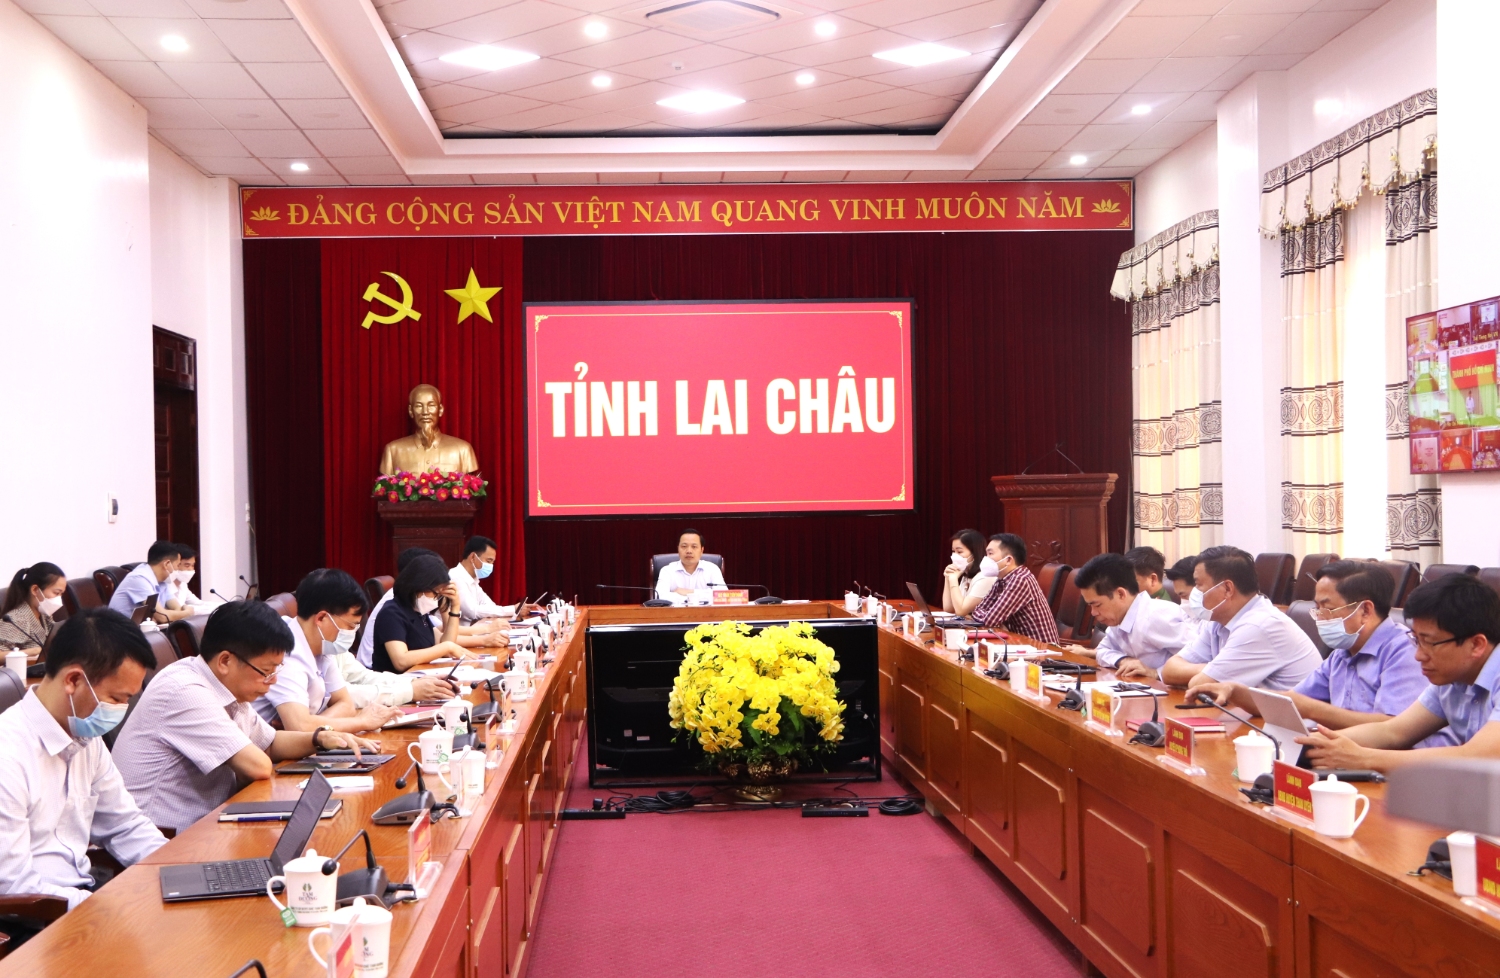 Đại biểu dự Hội nghị tại điểm cầu tỉnh Lai Châu